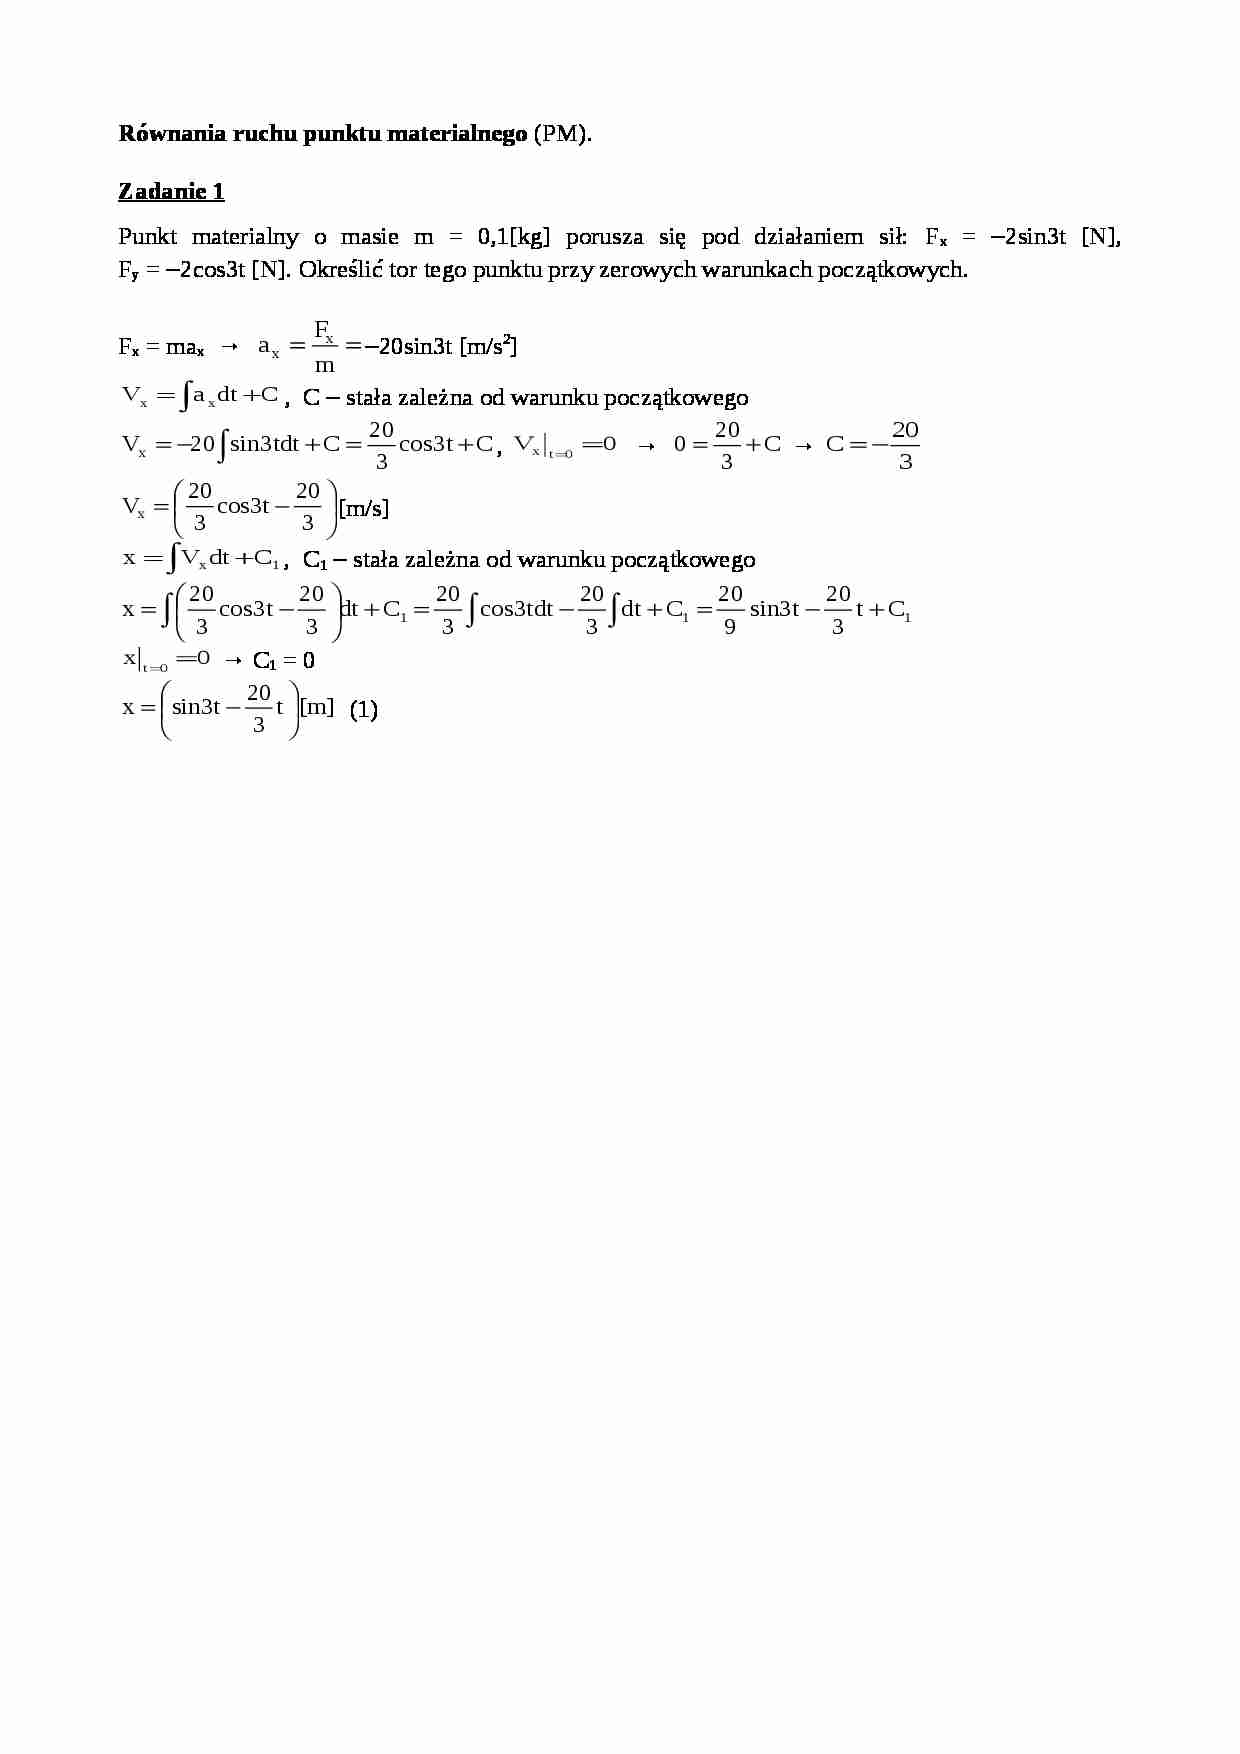 Równania ruchu punktu materialnego - zadania - strona 1